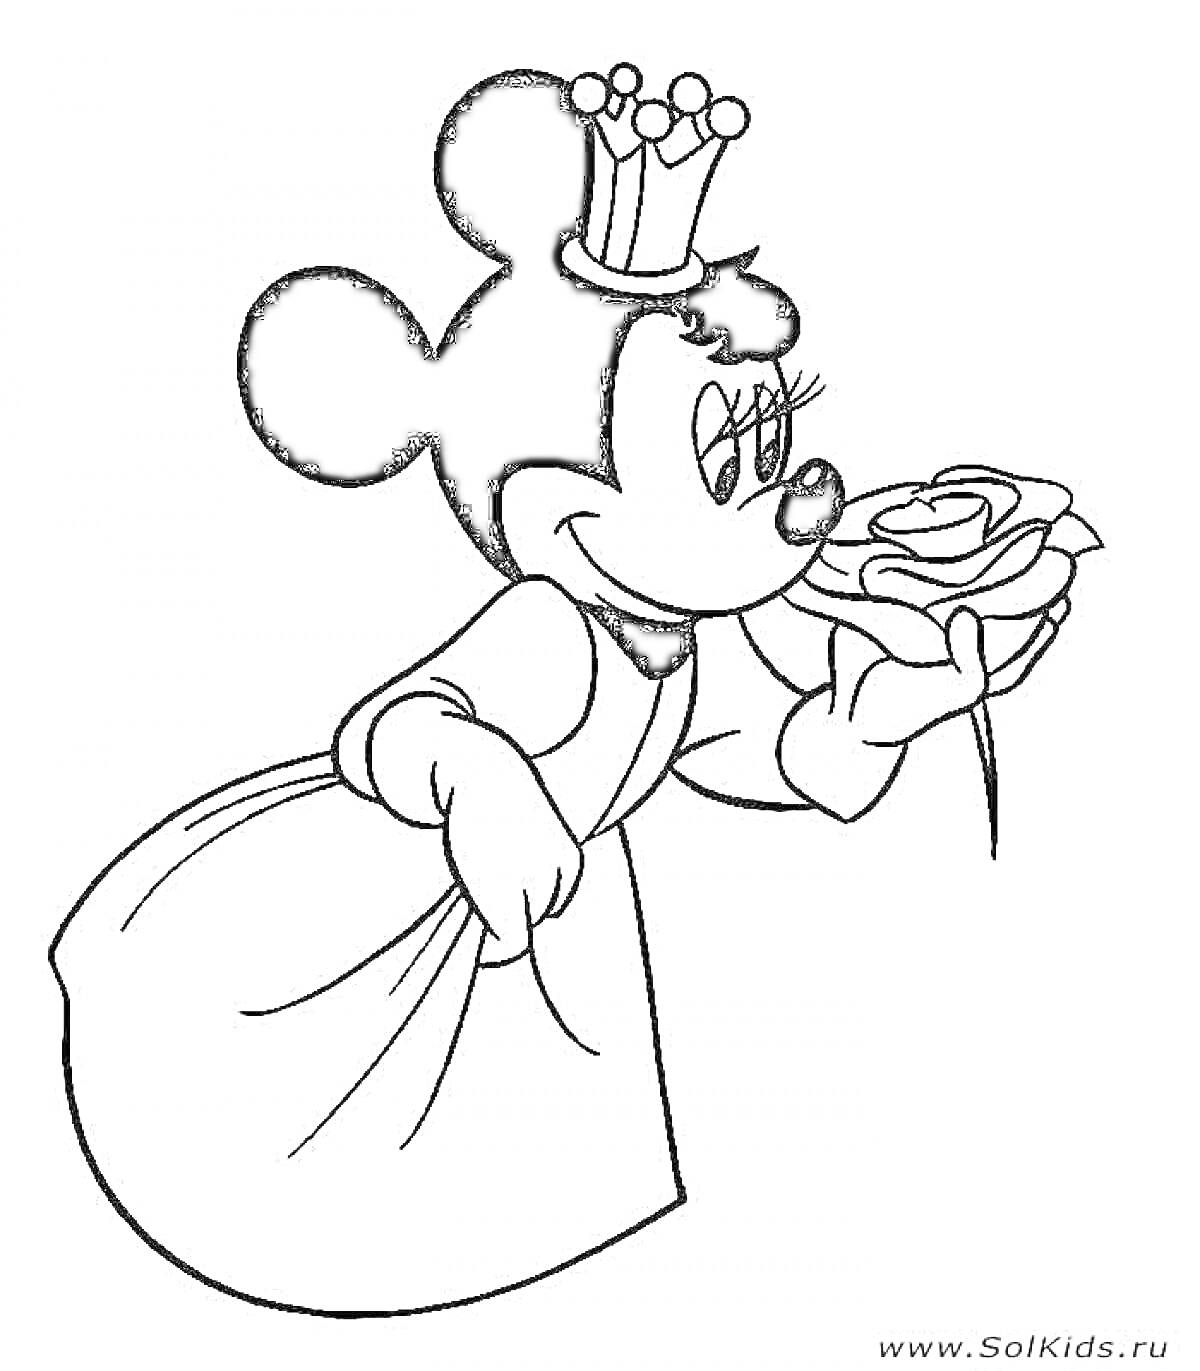 Раскраска Микки Маус в короне и платье нюхает розу